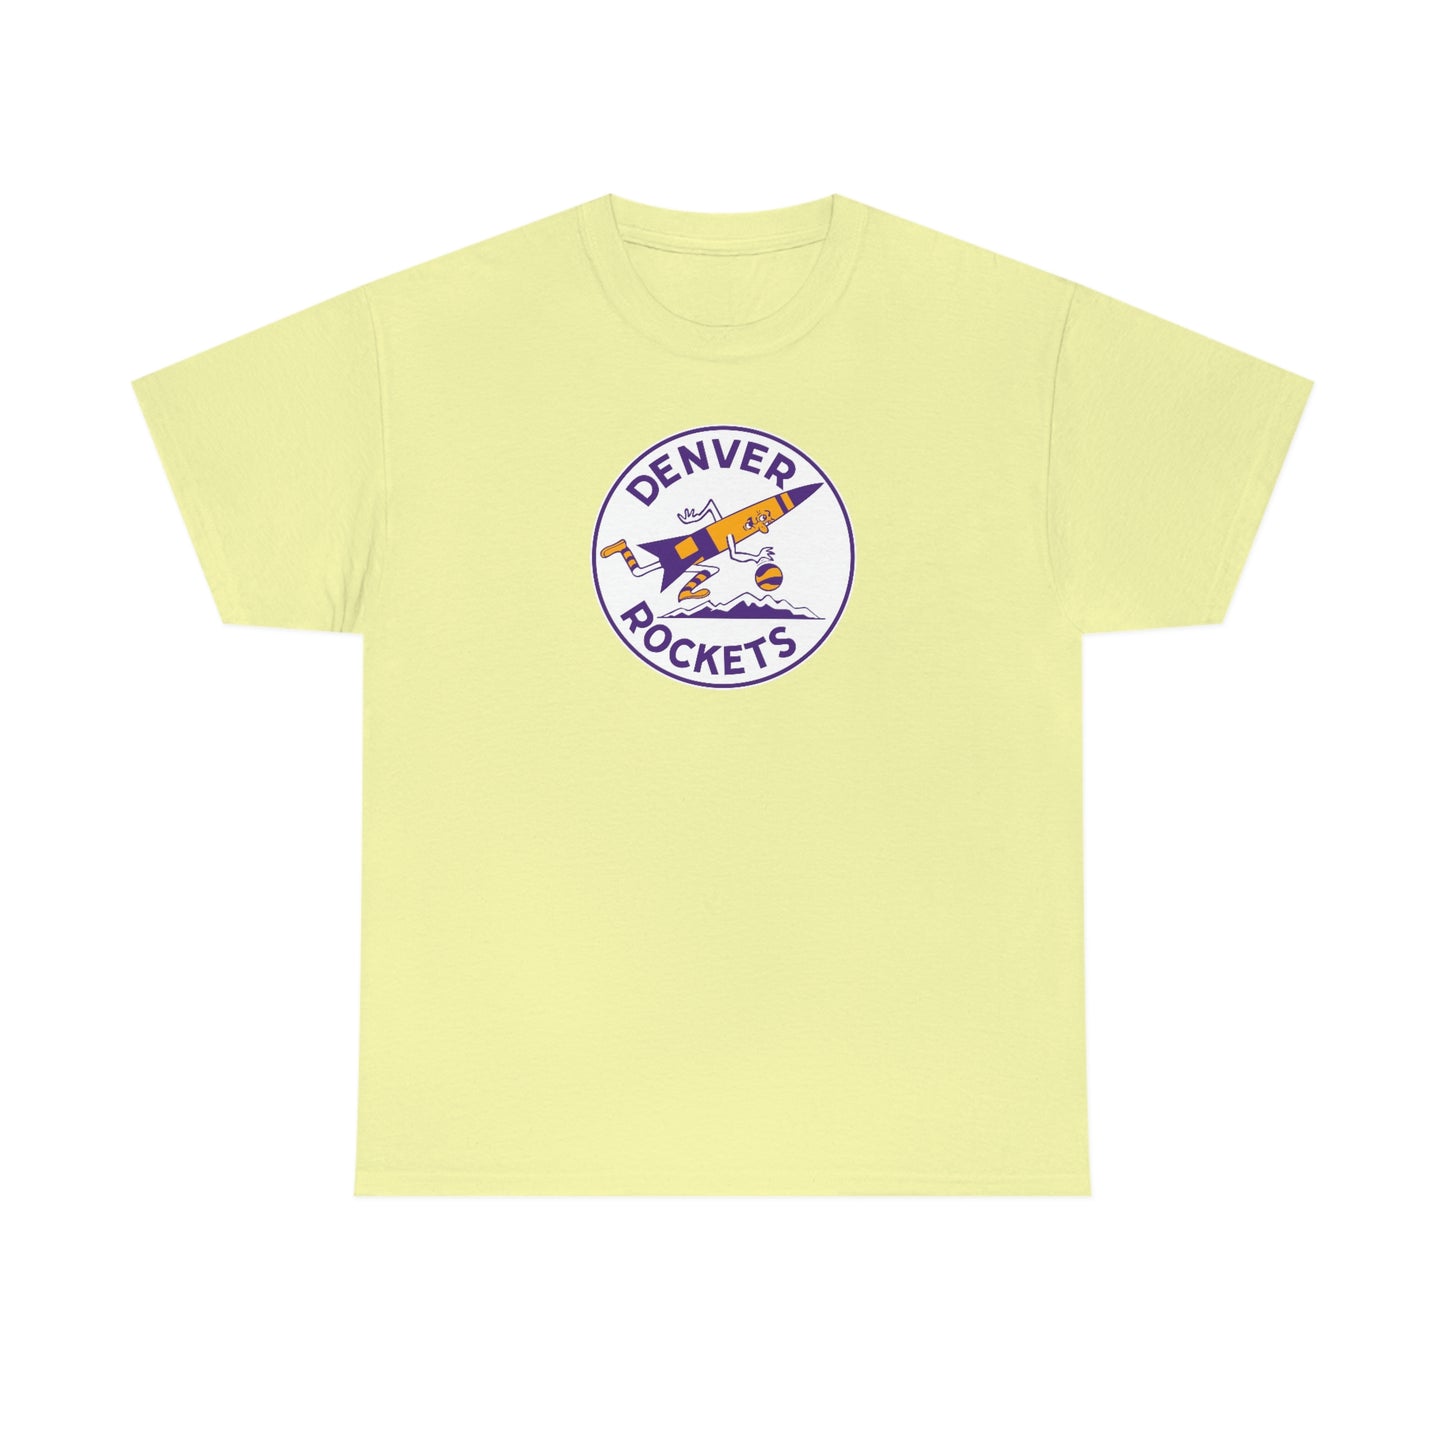 Denver Rockets T-Shirt